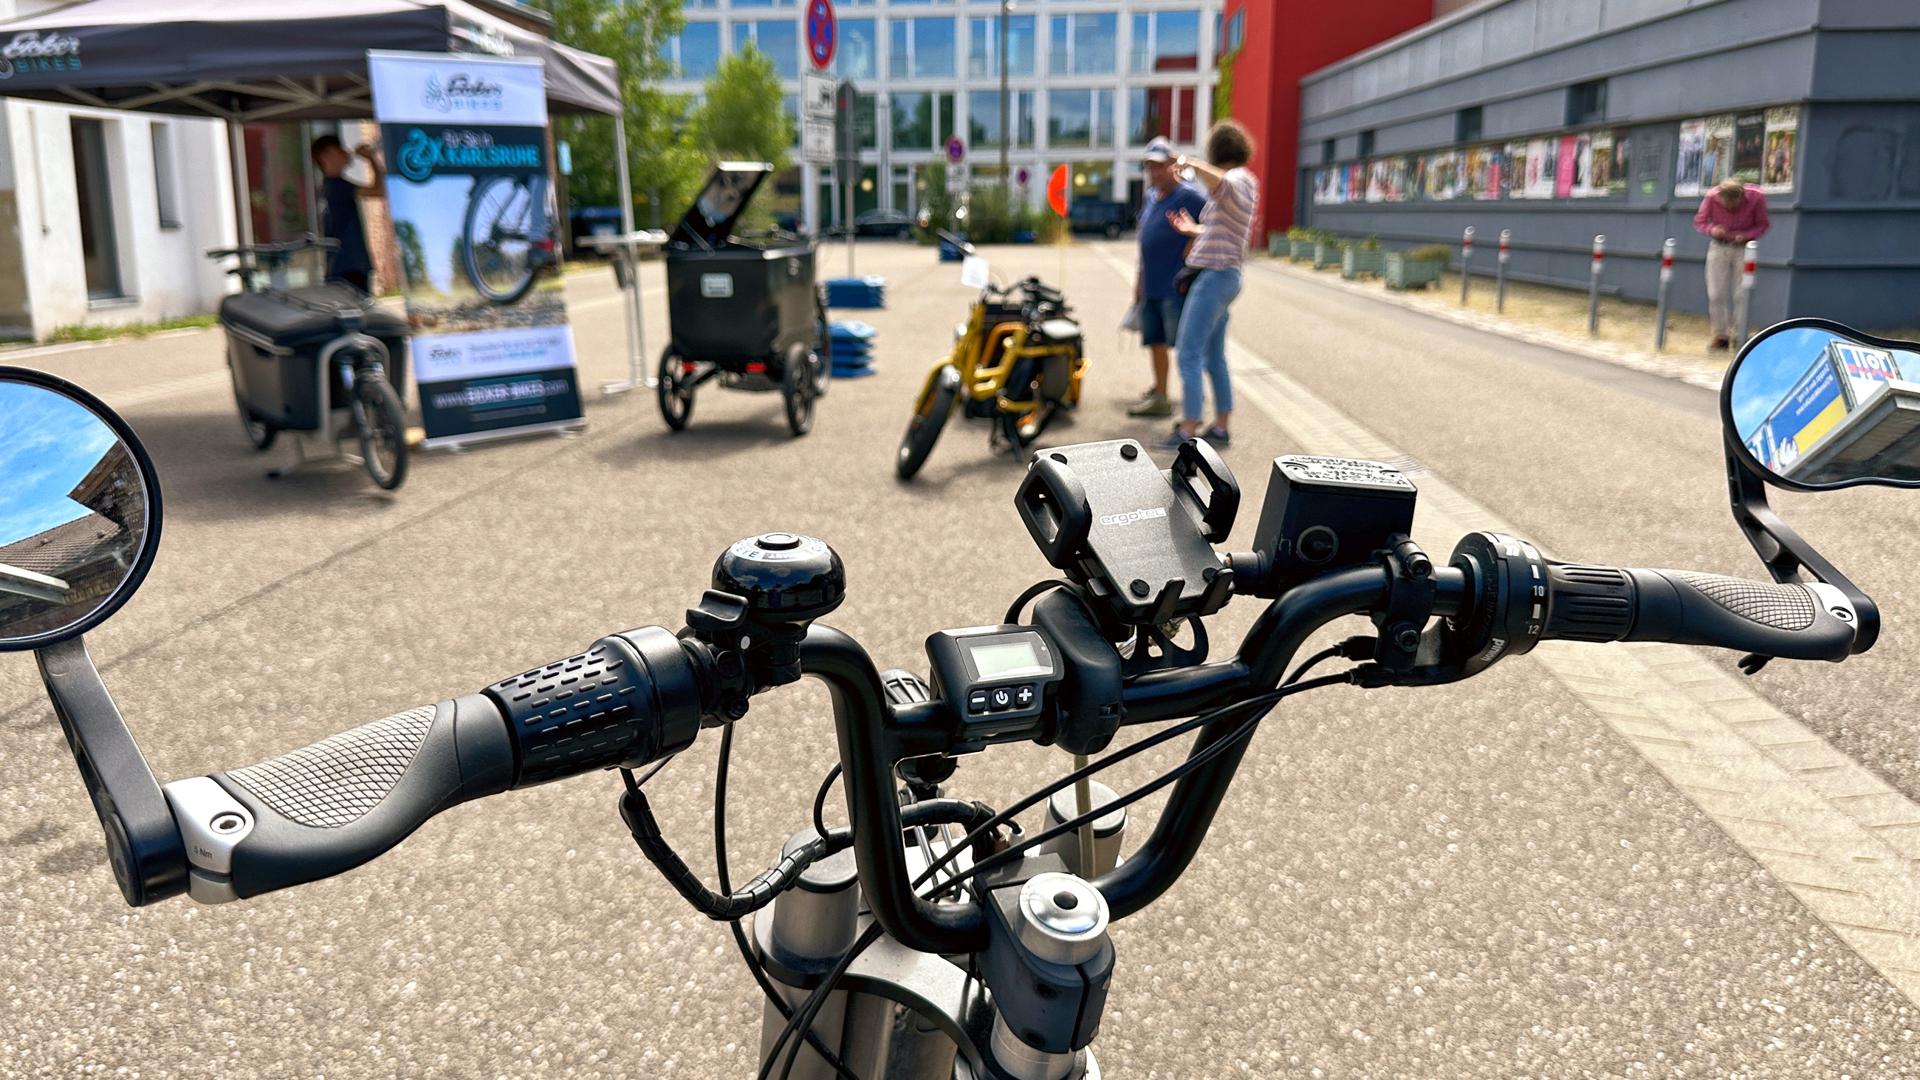 28.06.2023 Radreporter: Testparcours für gewerbliche Lastenräder Rückgabe Gewerbetreibender nach Lastenrad-Testphase